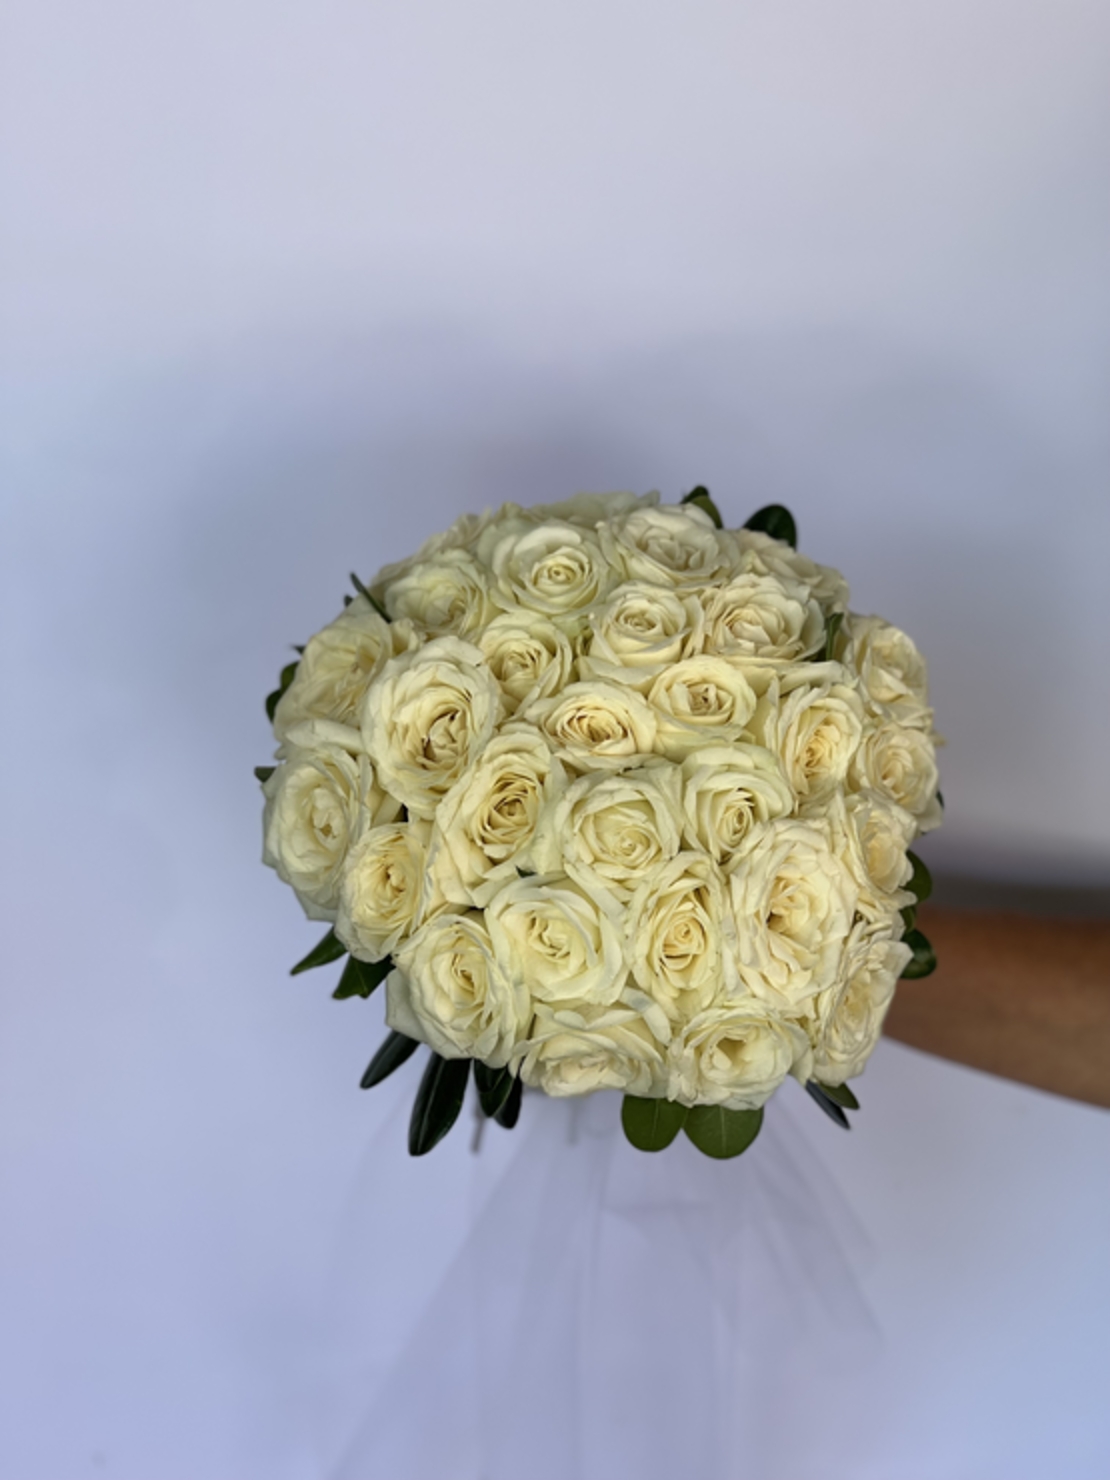 Louise's bridal bouquet